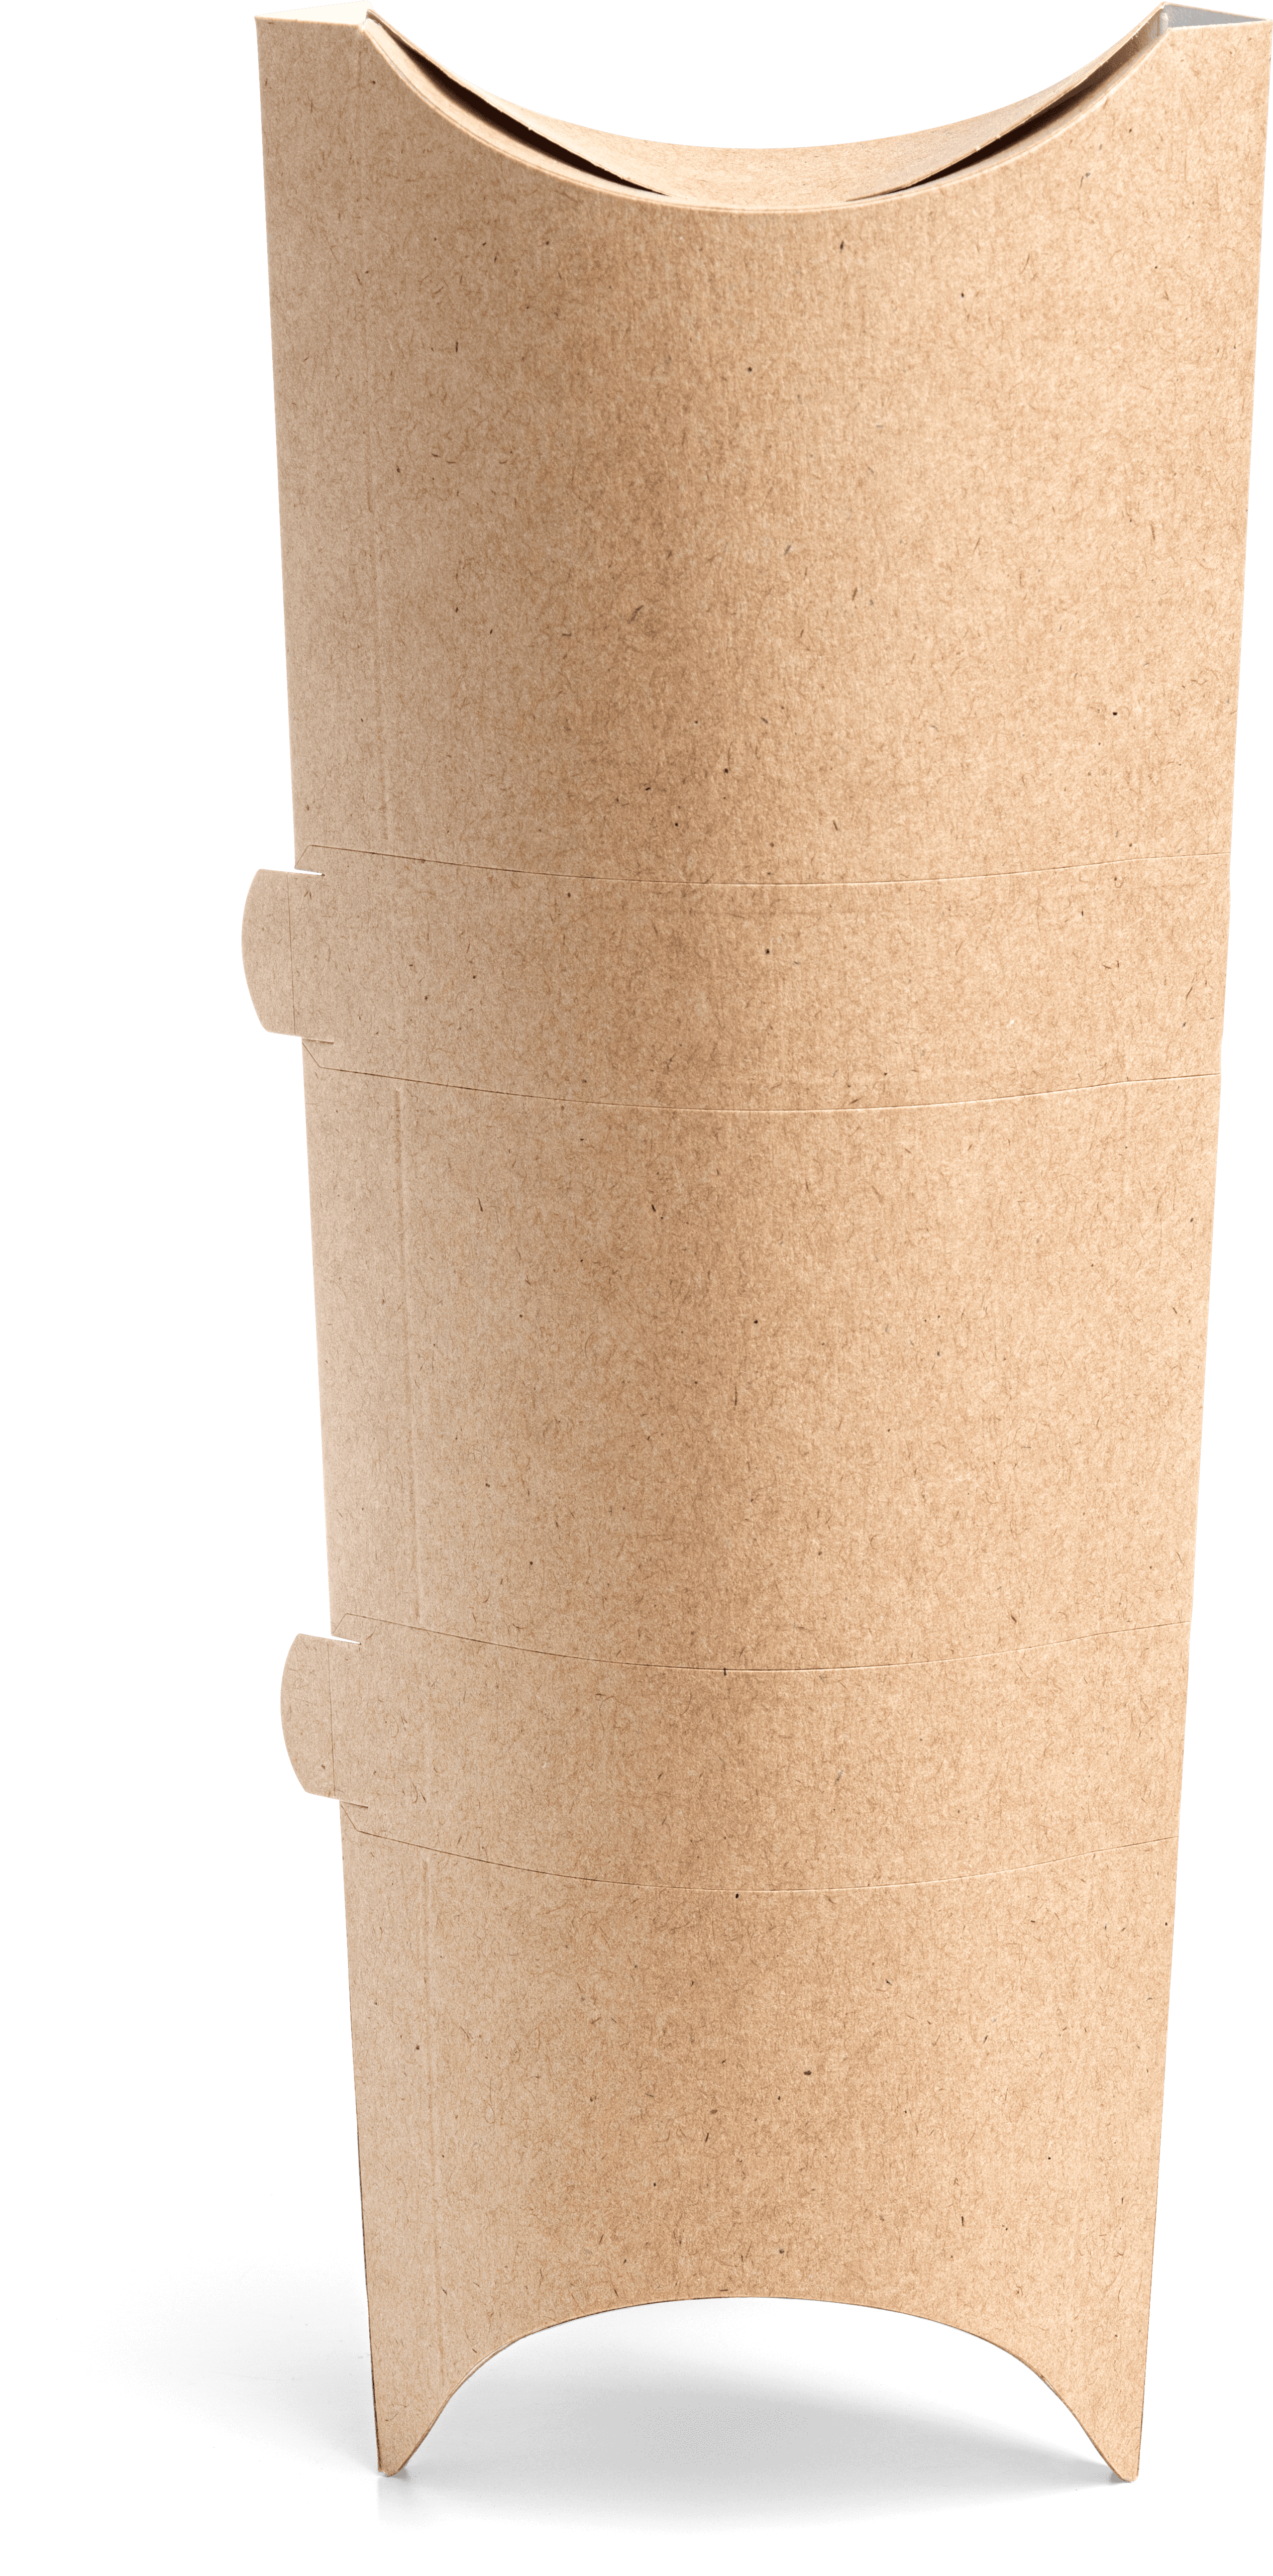 OSQ PILLOW XL packaging for rolls